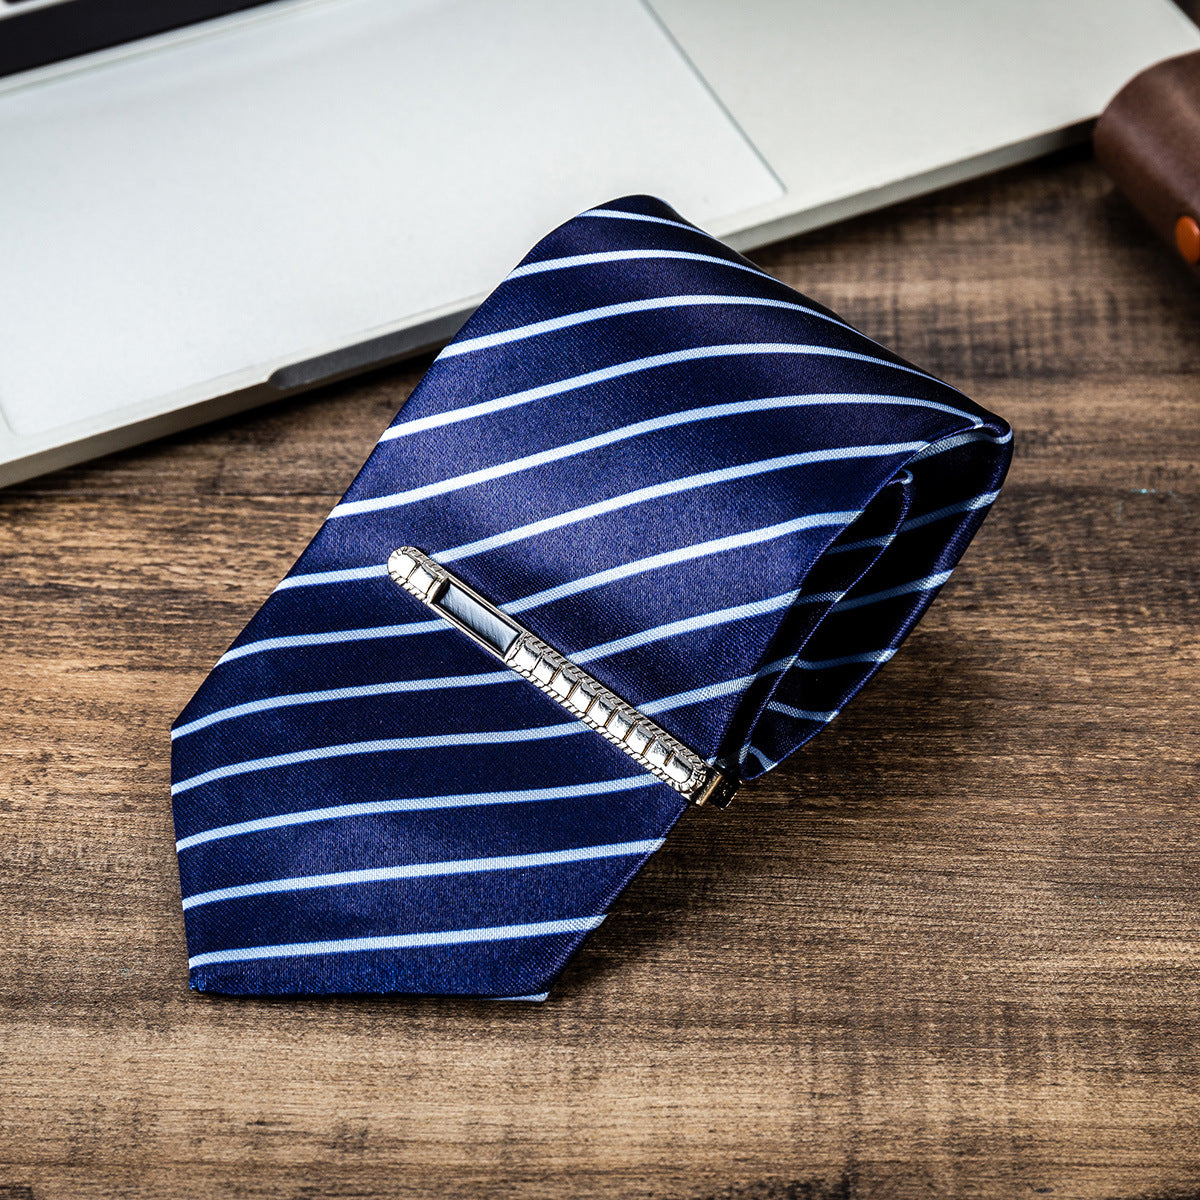 Men's Gift Suit Exquisite Packaging Watch Belt Tie Wallet Simple Combination Suit